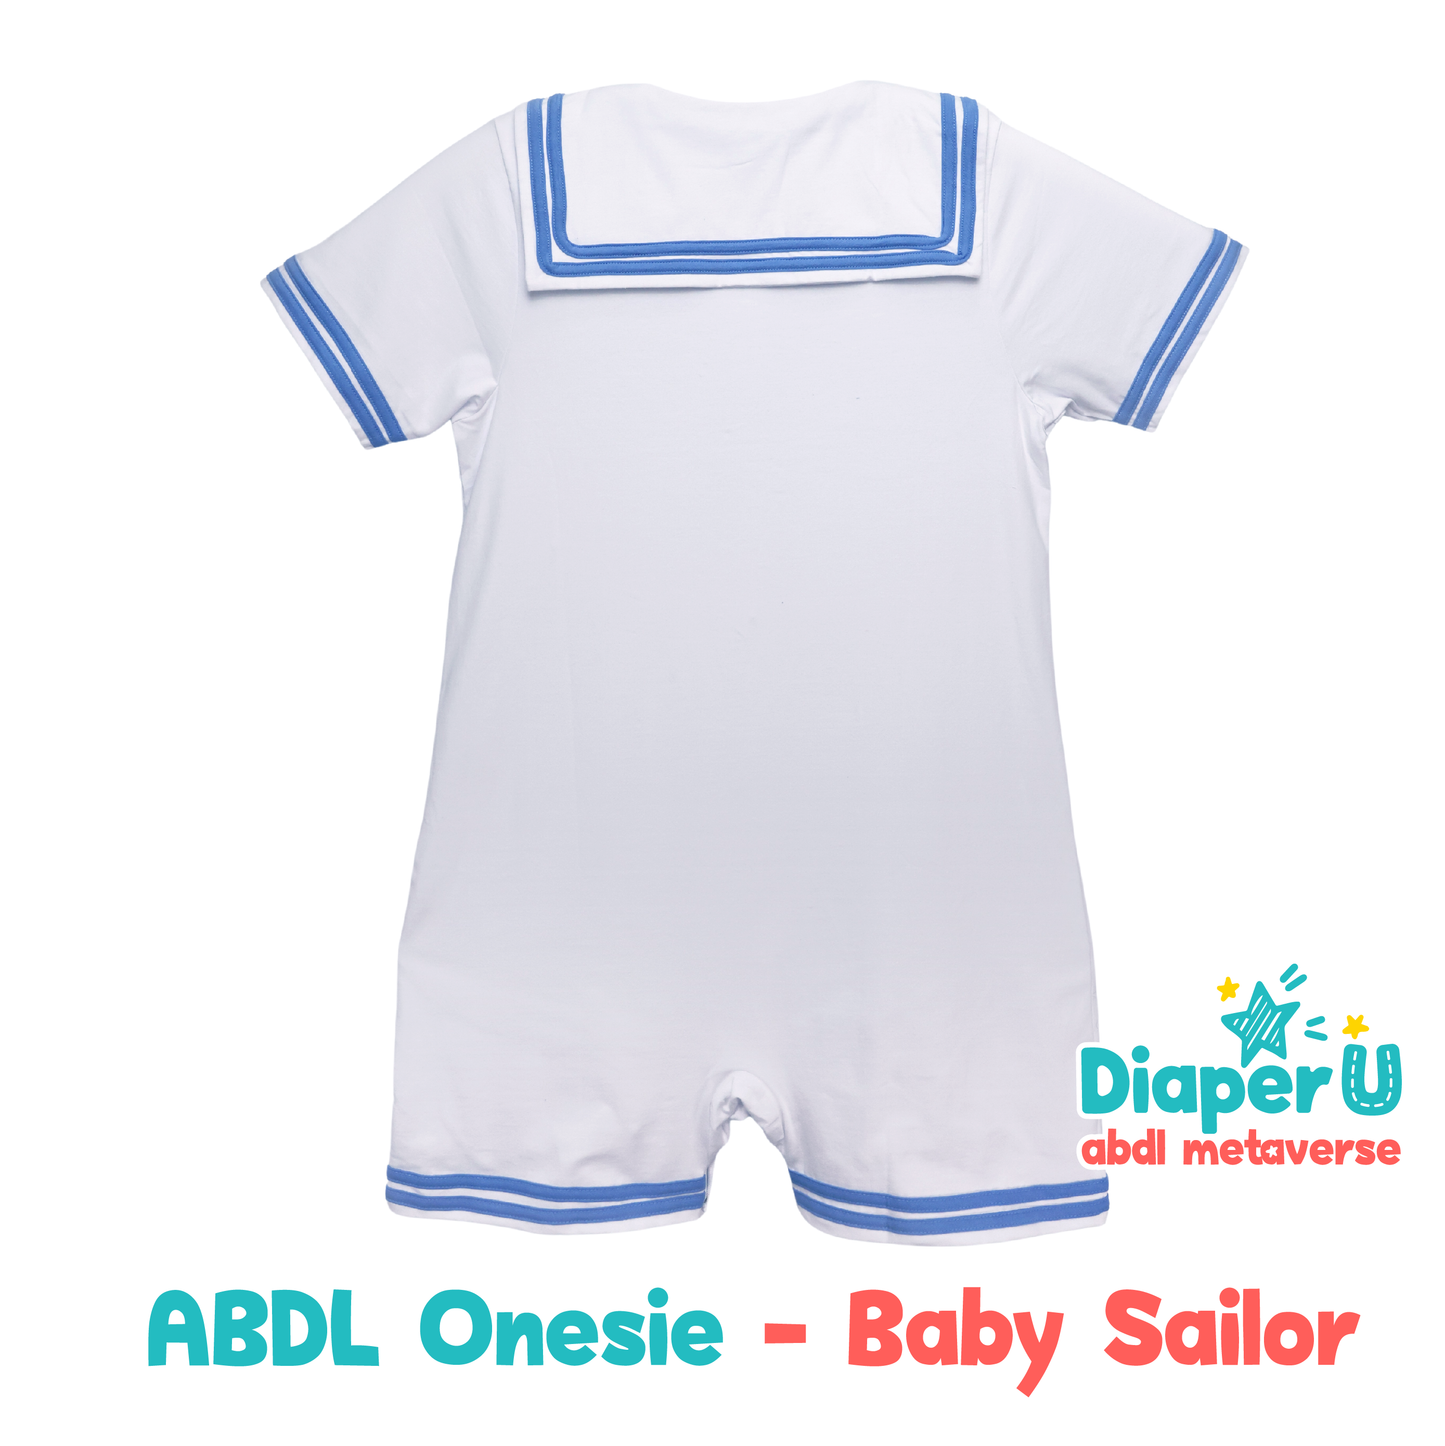 ABDL Onesie - Baby Sailor